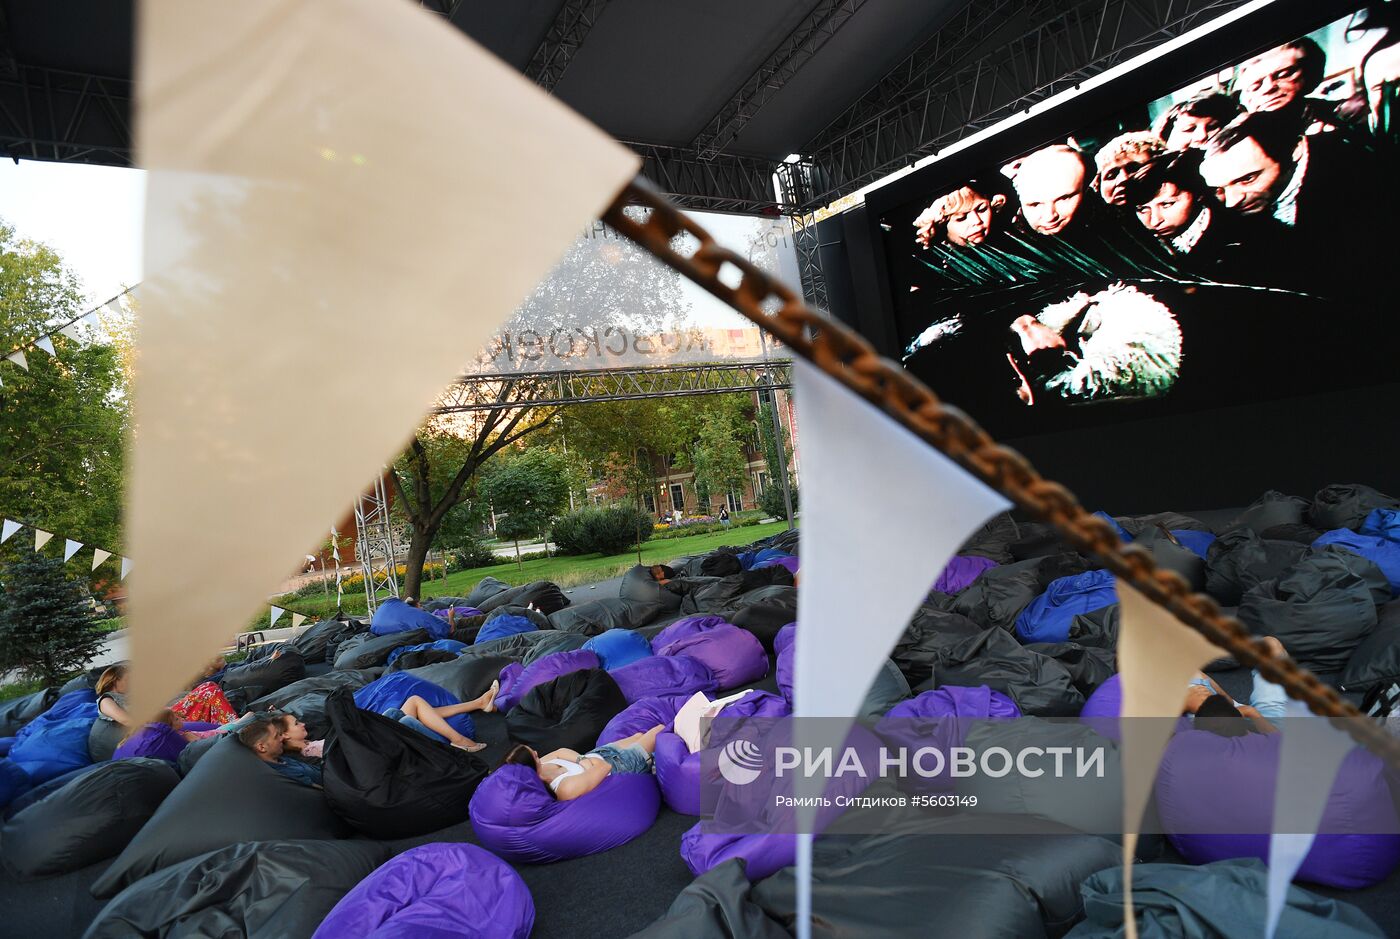 Летние кинотеатры открылись в парках Москвы